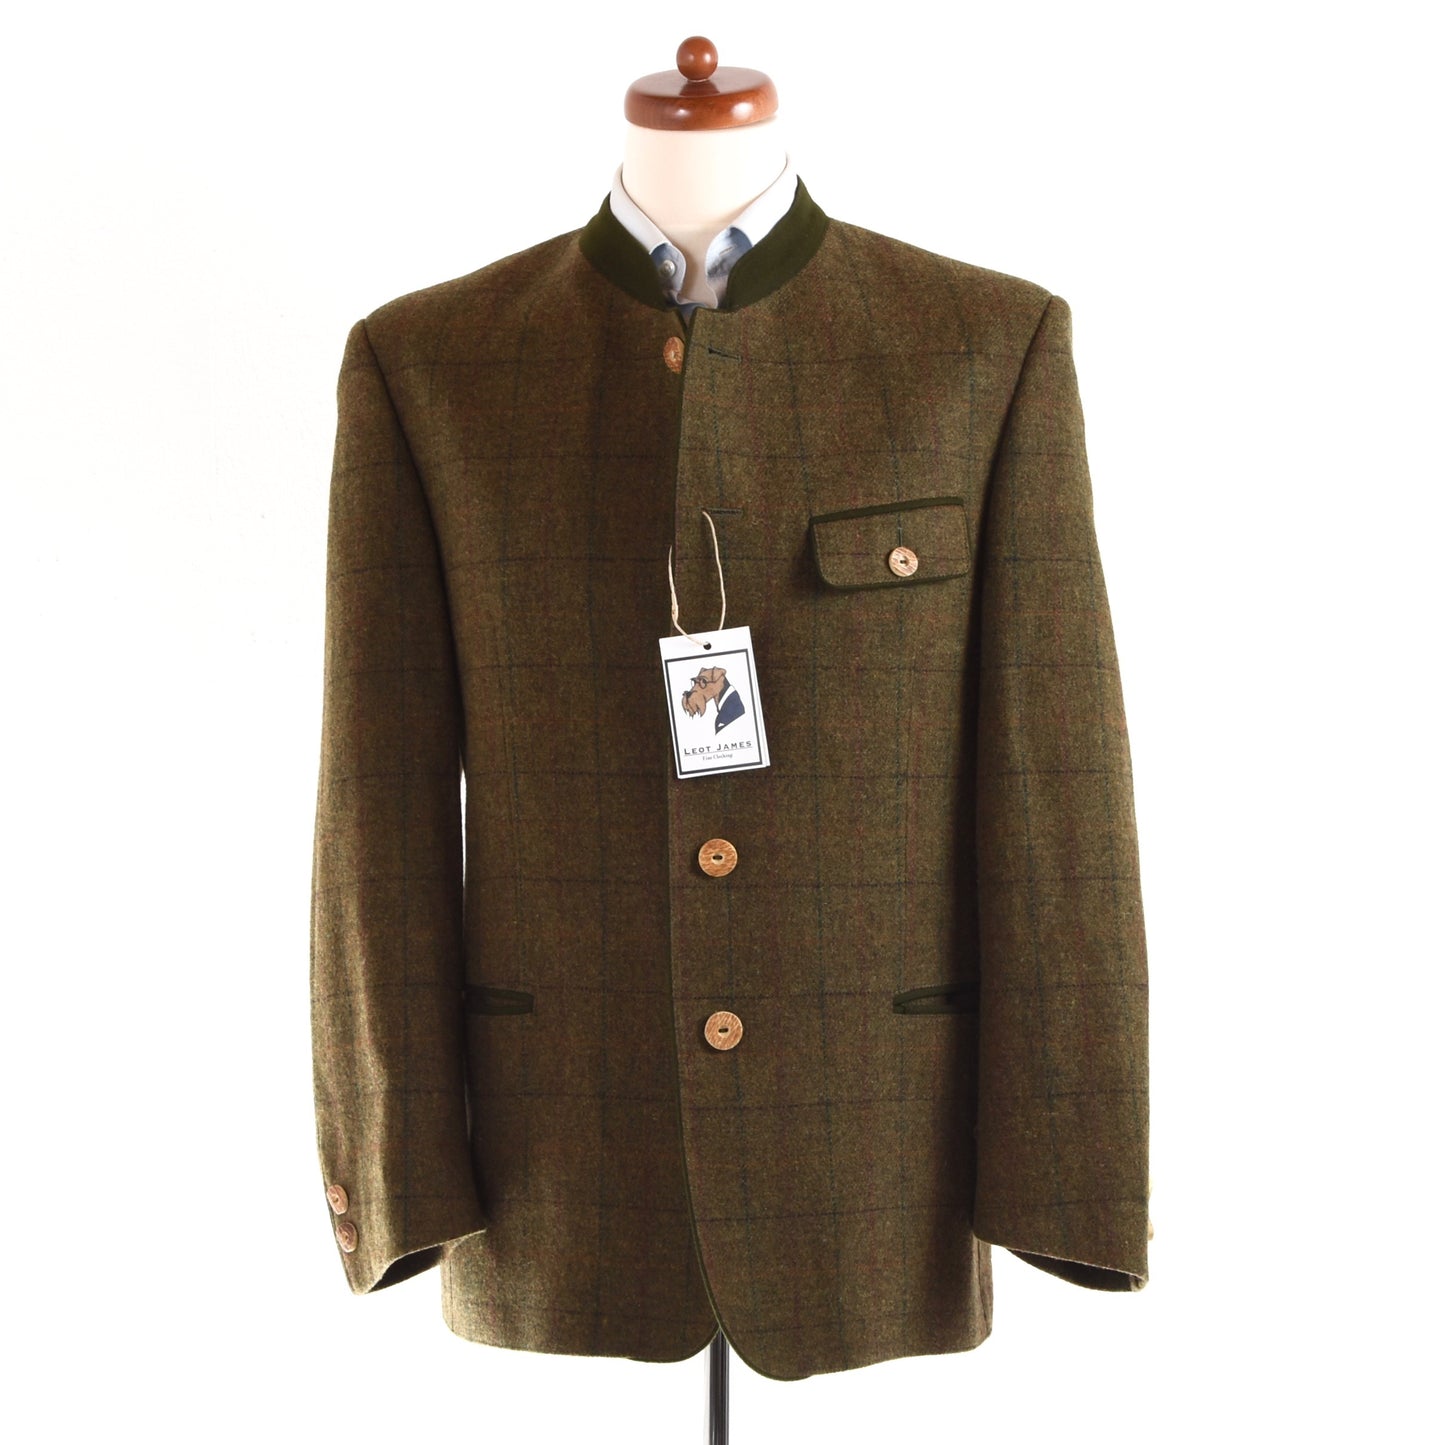 Allwerk Tweed Janker/Jacket Size 48 - Green Windowpane